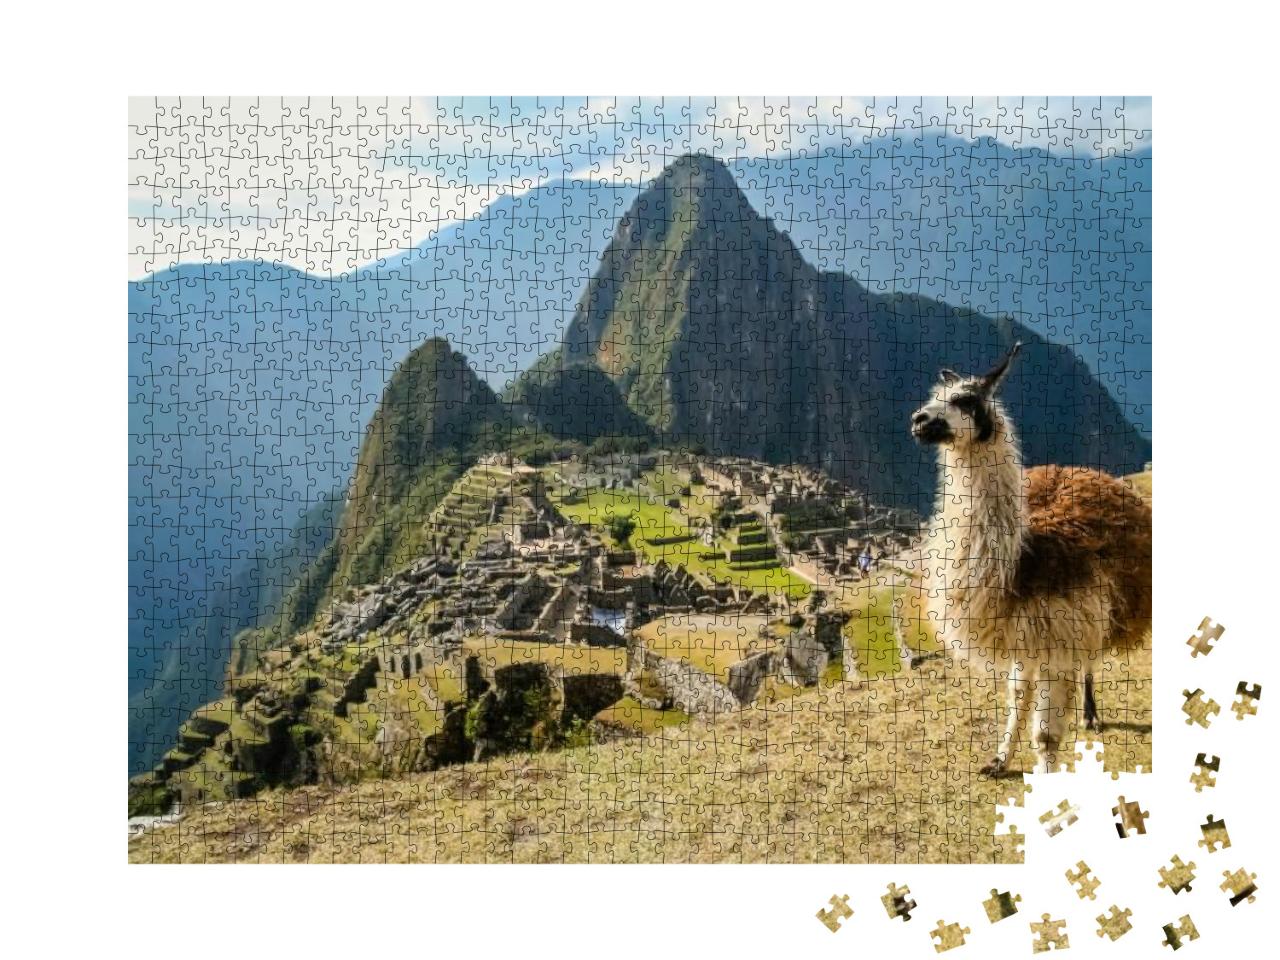 Puzzle 1000 Teile „Lama vor der alten Inkastadt Machu Picchu“